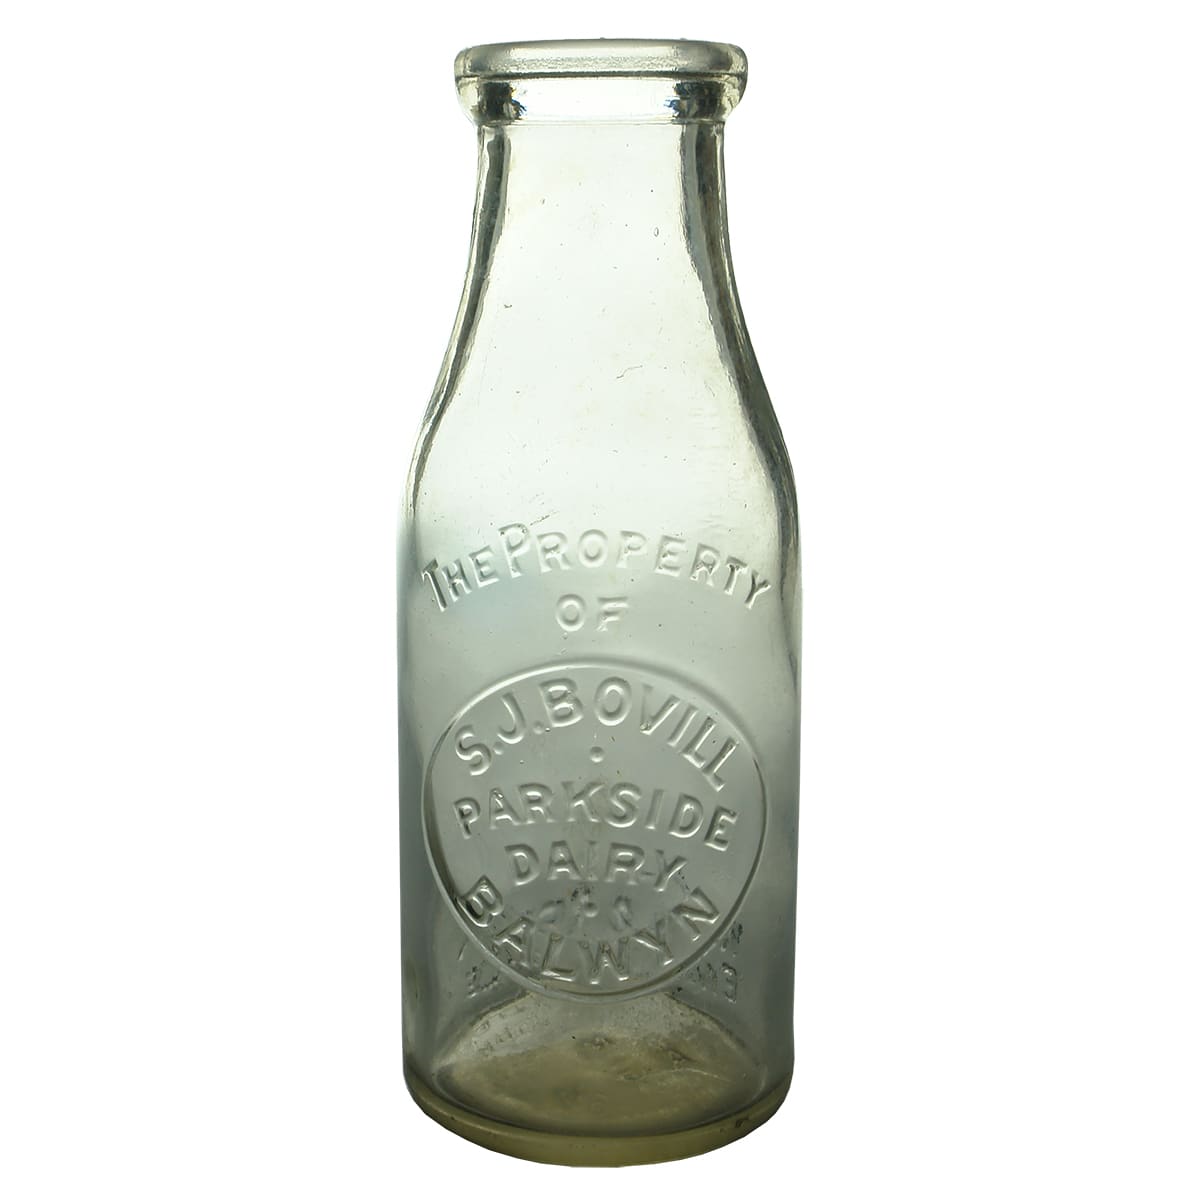 Milk. S. J. Bovill, Parkside Dairy, Balwyn. Wad lip. 1 Pint. (Victoria)